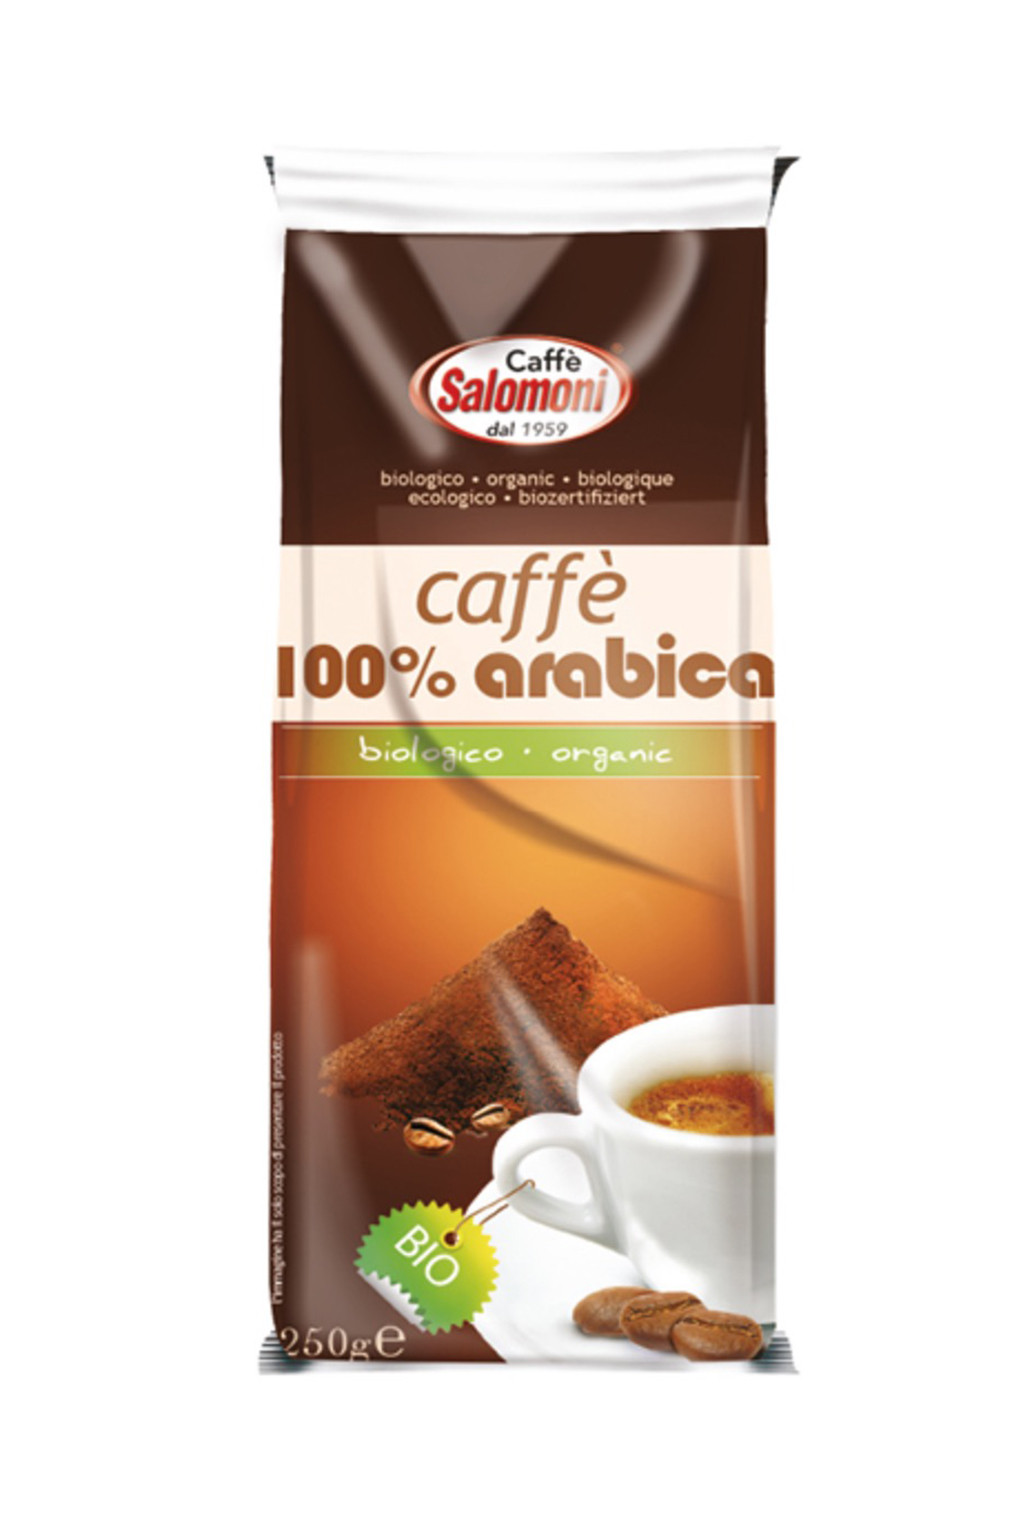 caffe-100-arabica-biologico-salomoni_12001.jpeg